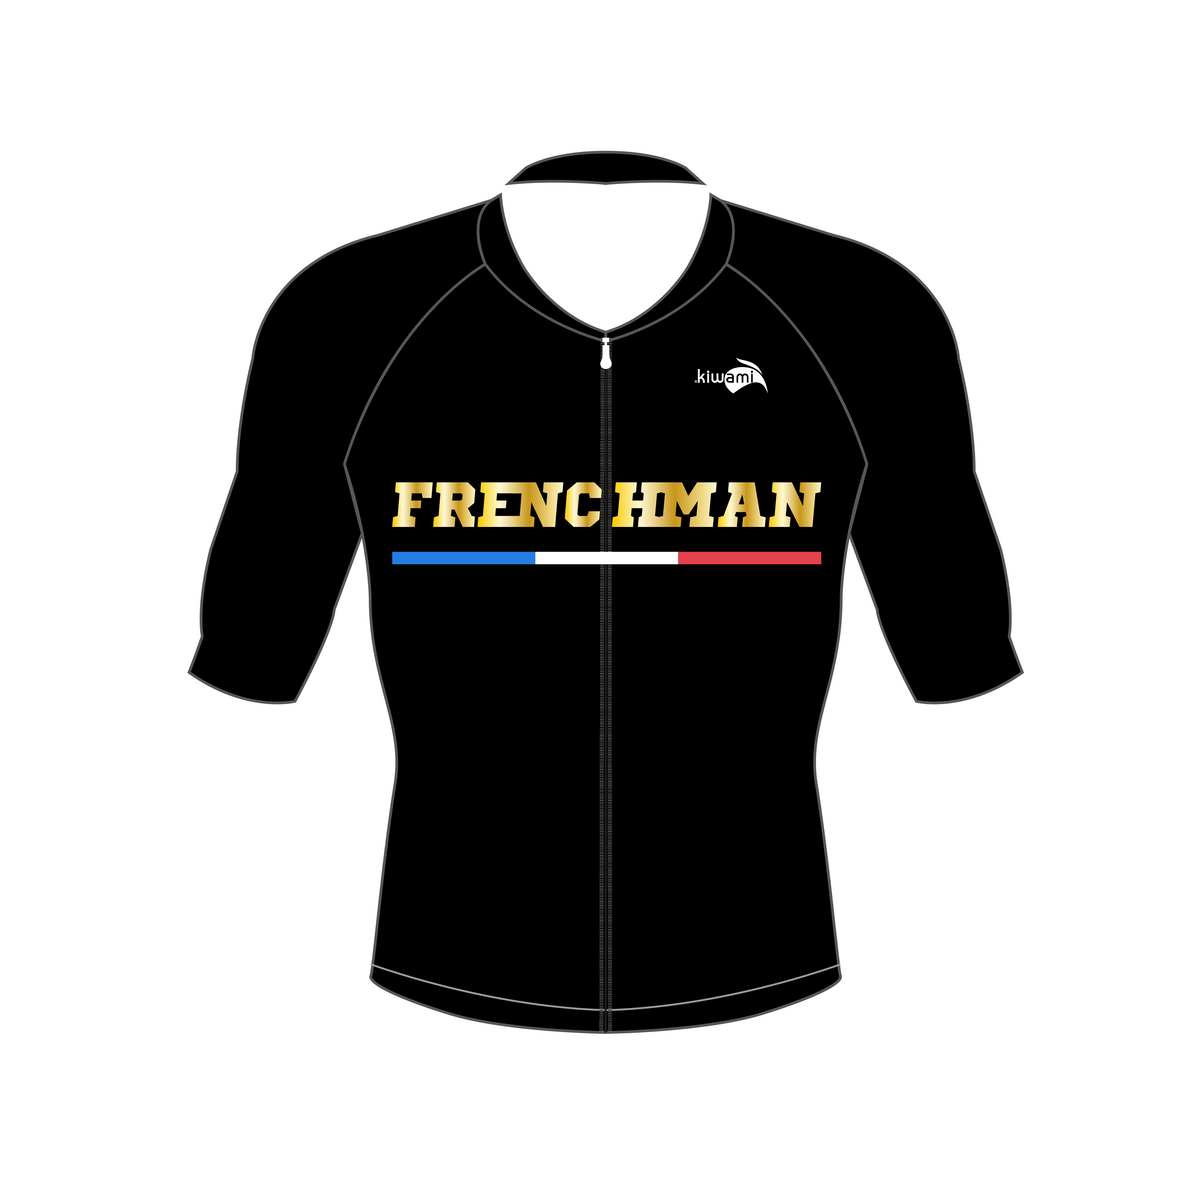 maillot vélo homme fabrication française Kiwami Sports - Frenchman triathlon triathlete